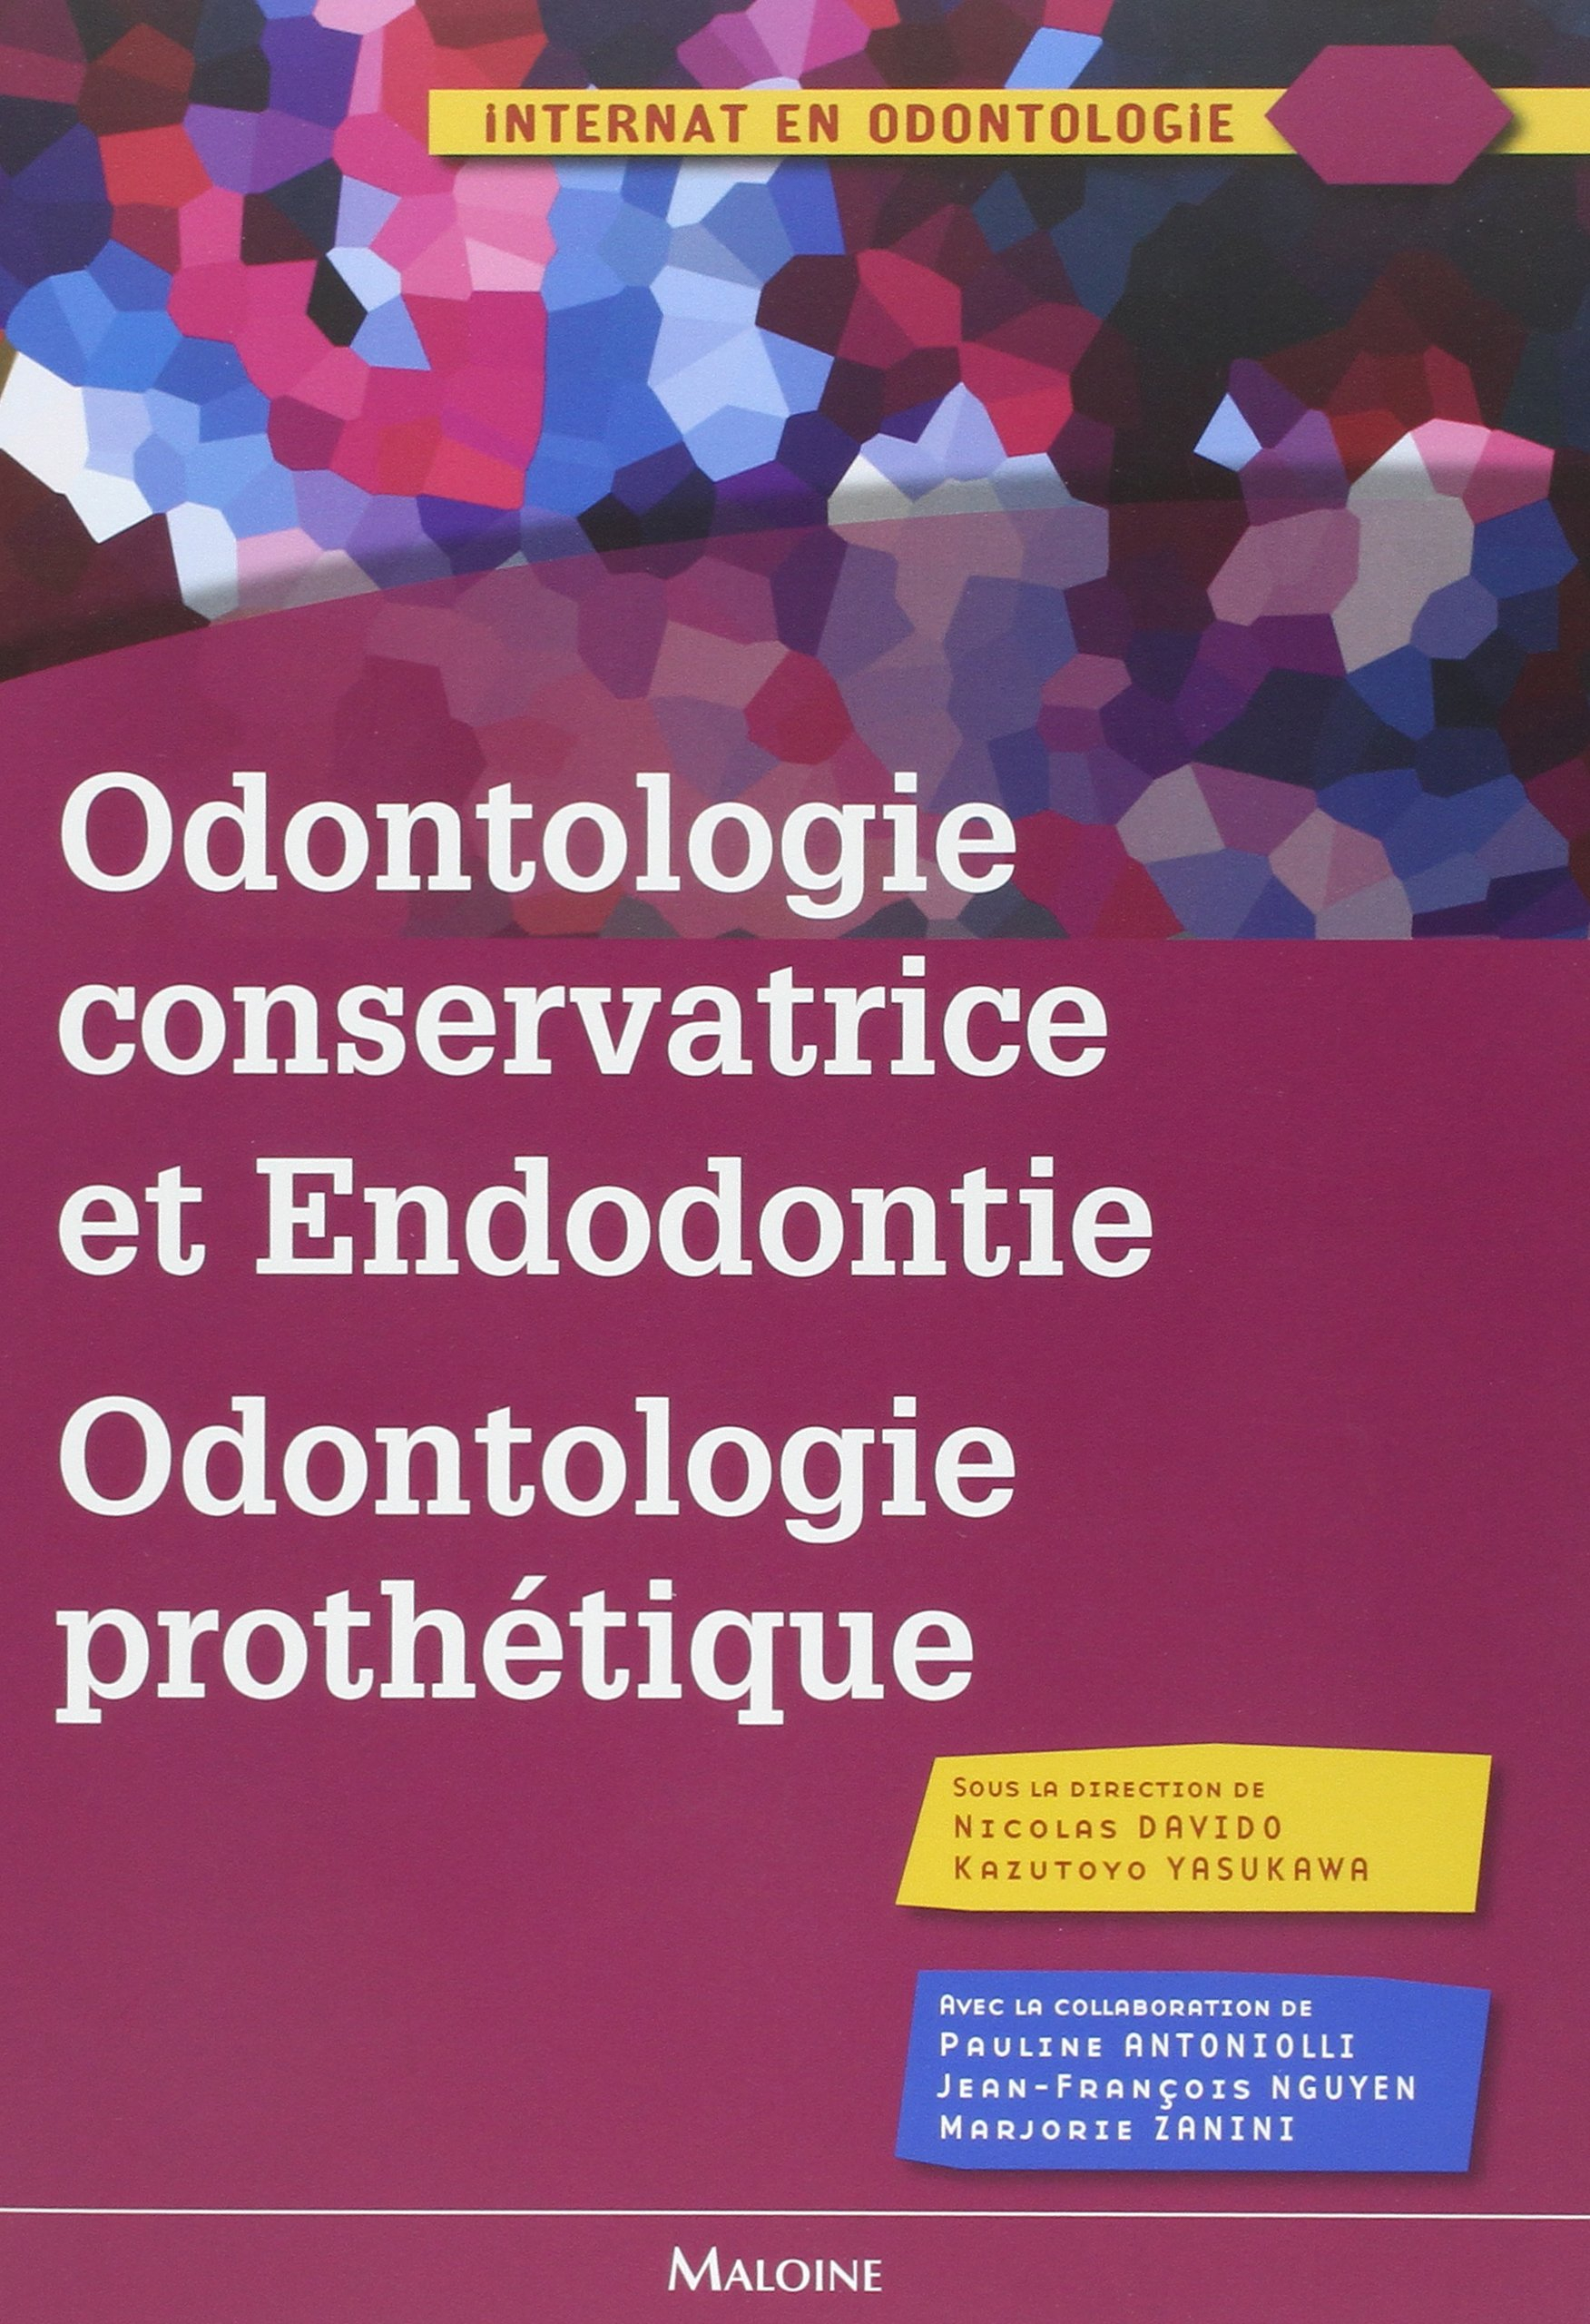 Odontologie conservatrice et endodontie, odontologie prothétique